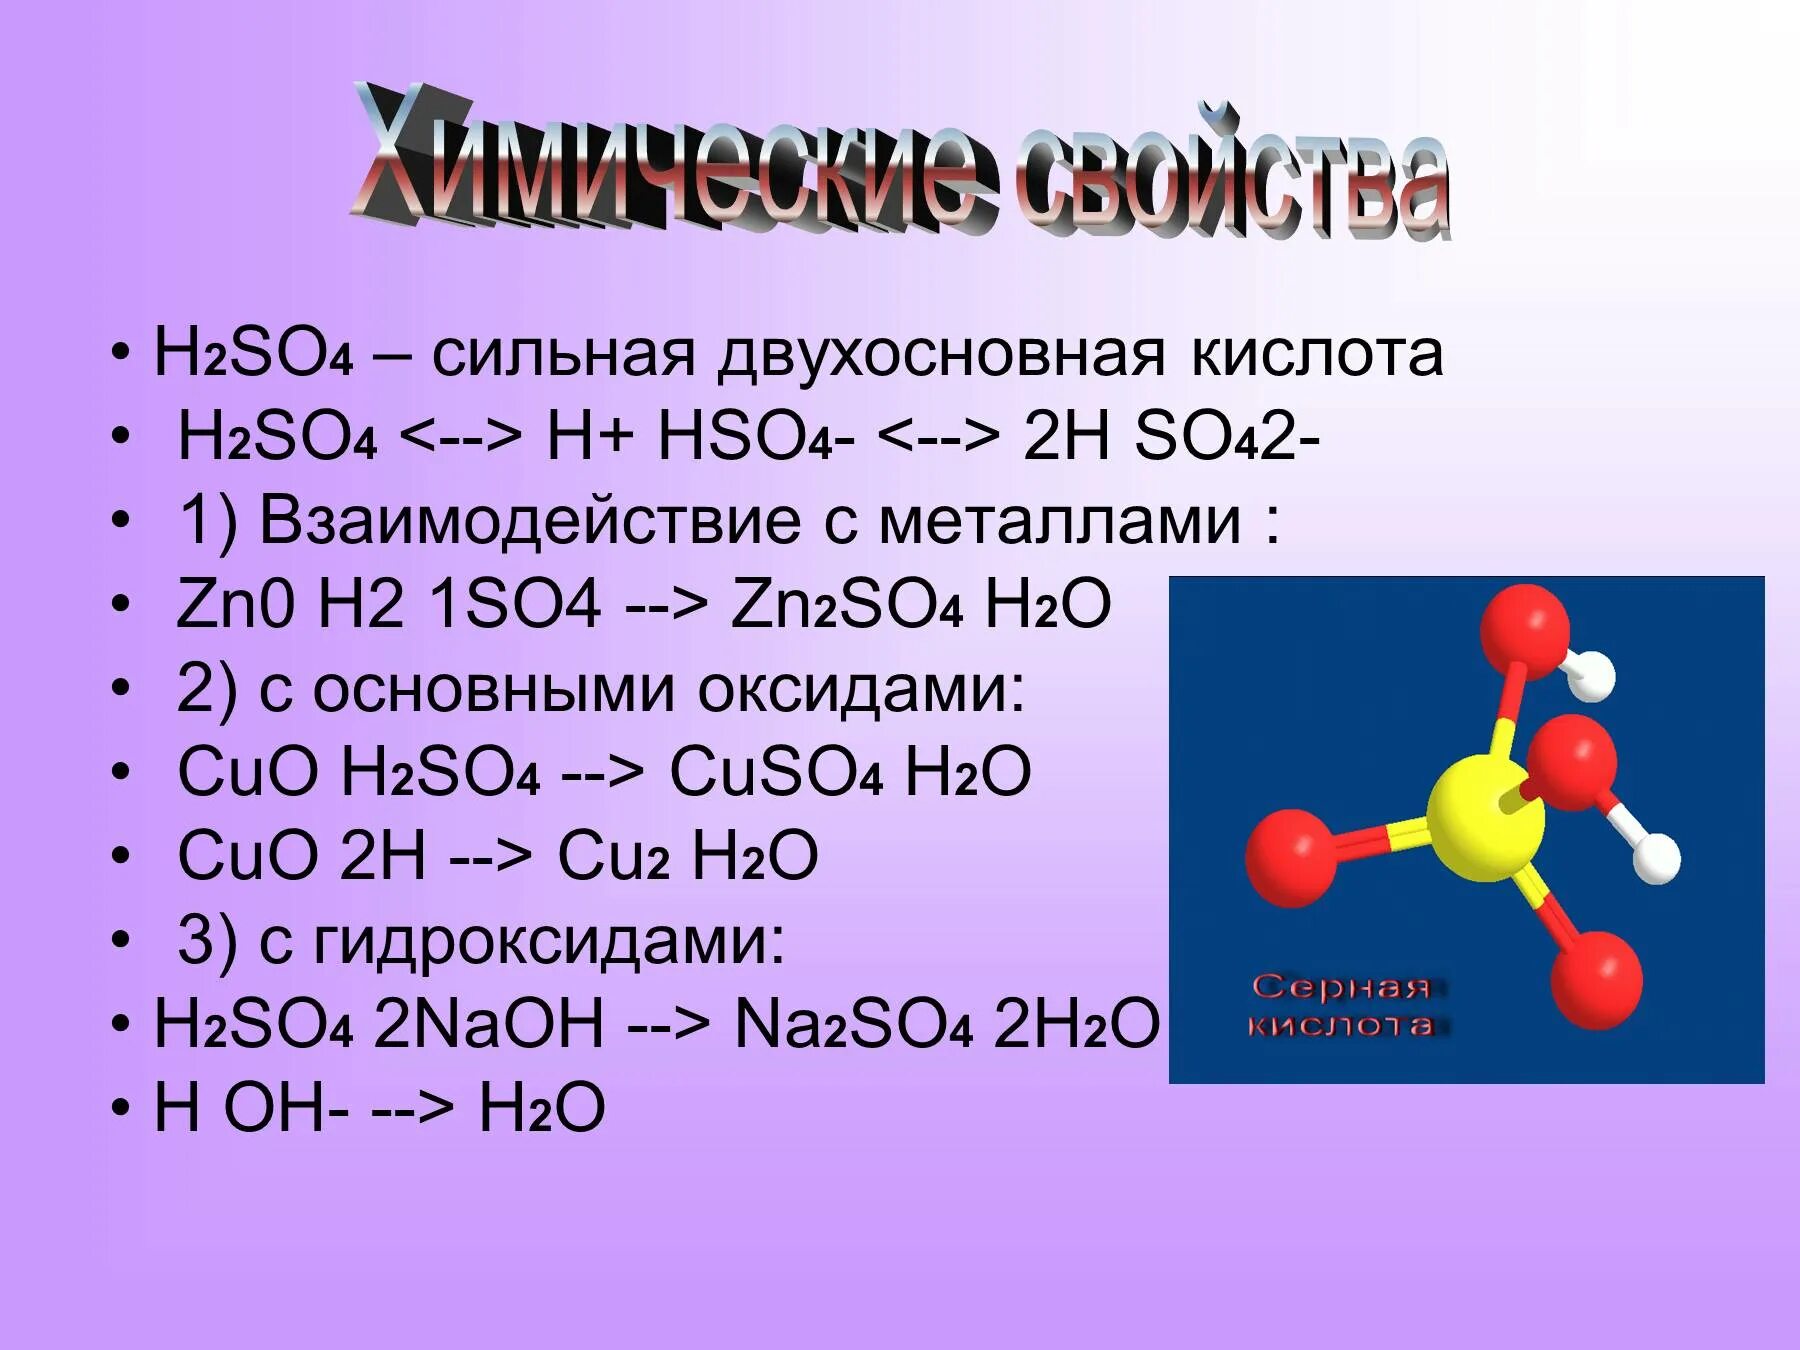 Формула серной кислоты h2so4. Химическая формула серной кислоты h2so4. H2ro4. H2po4 двухосновнаая кислота.